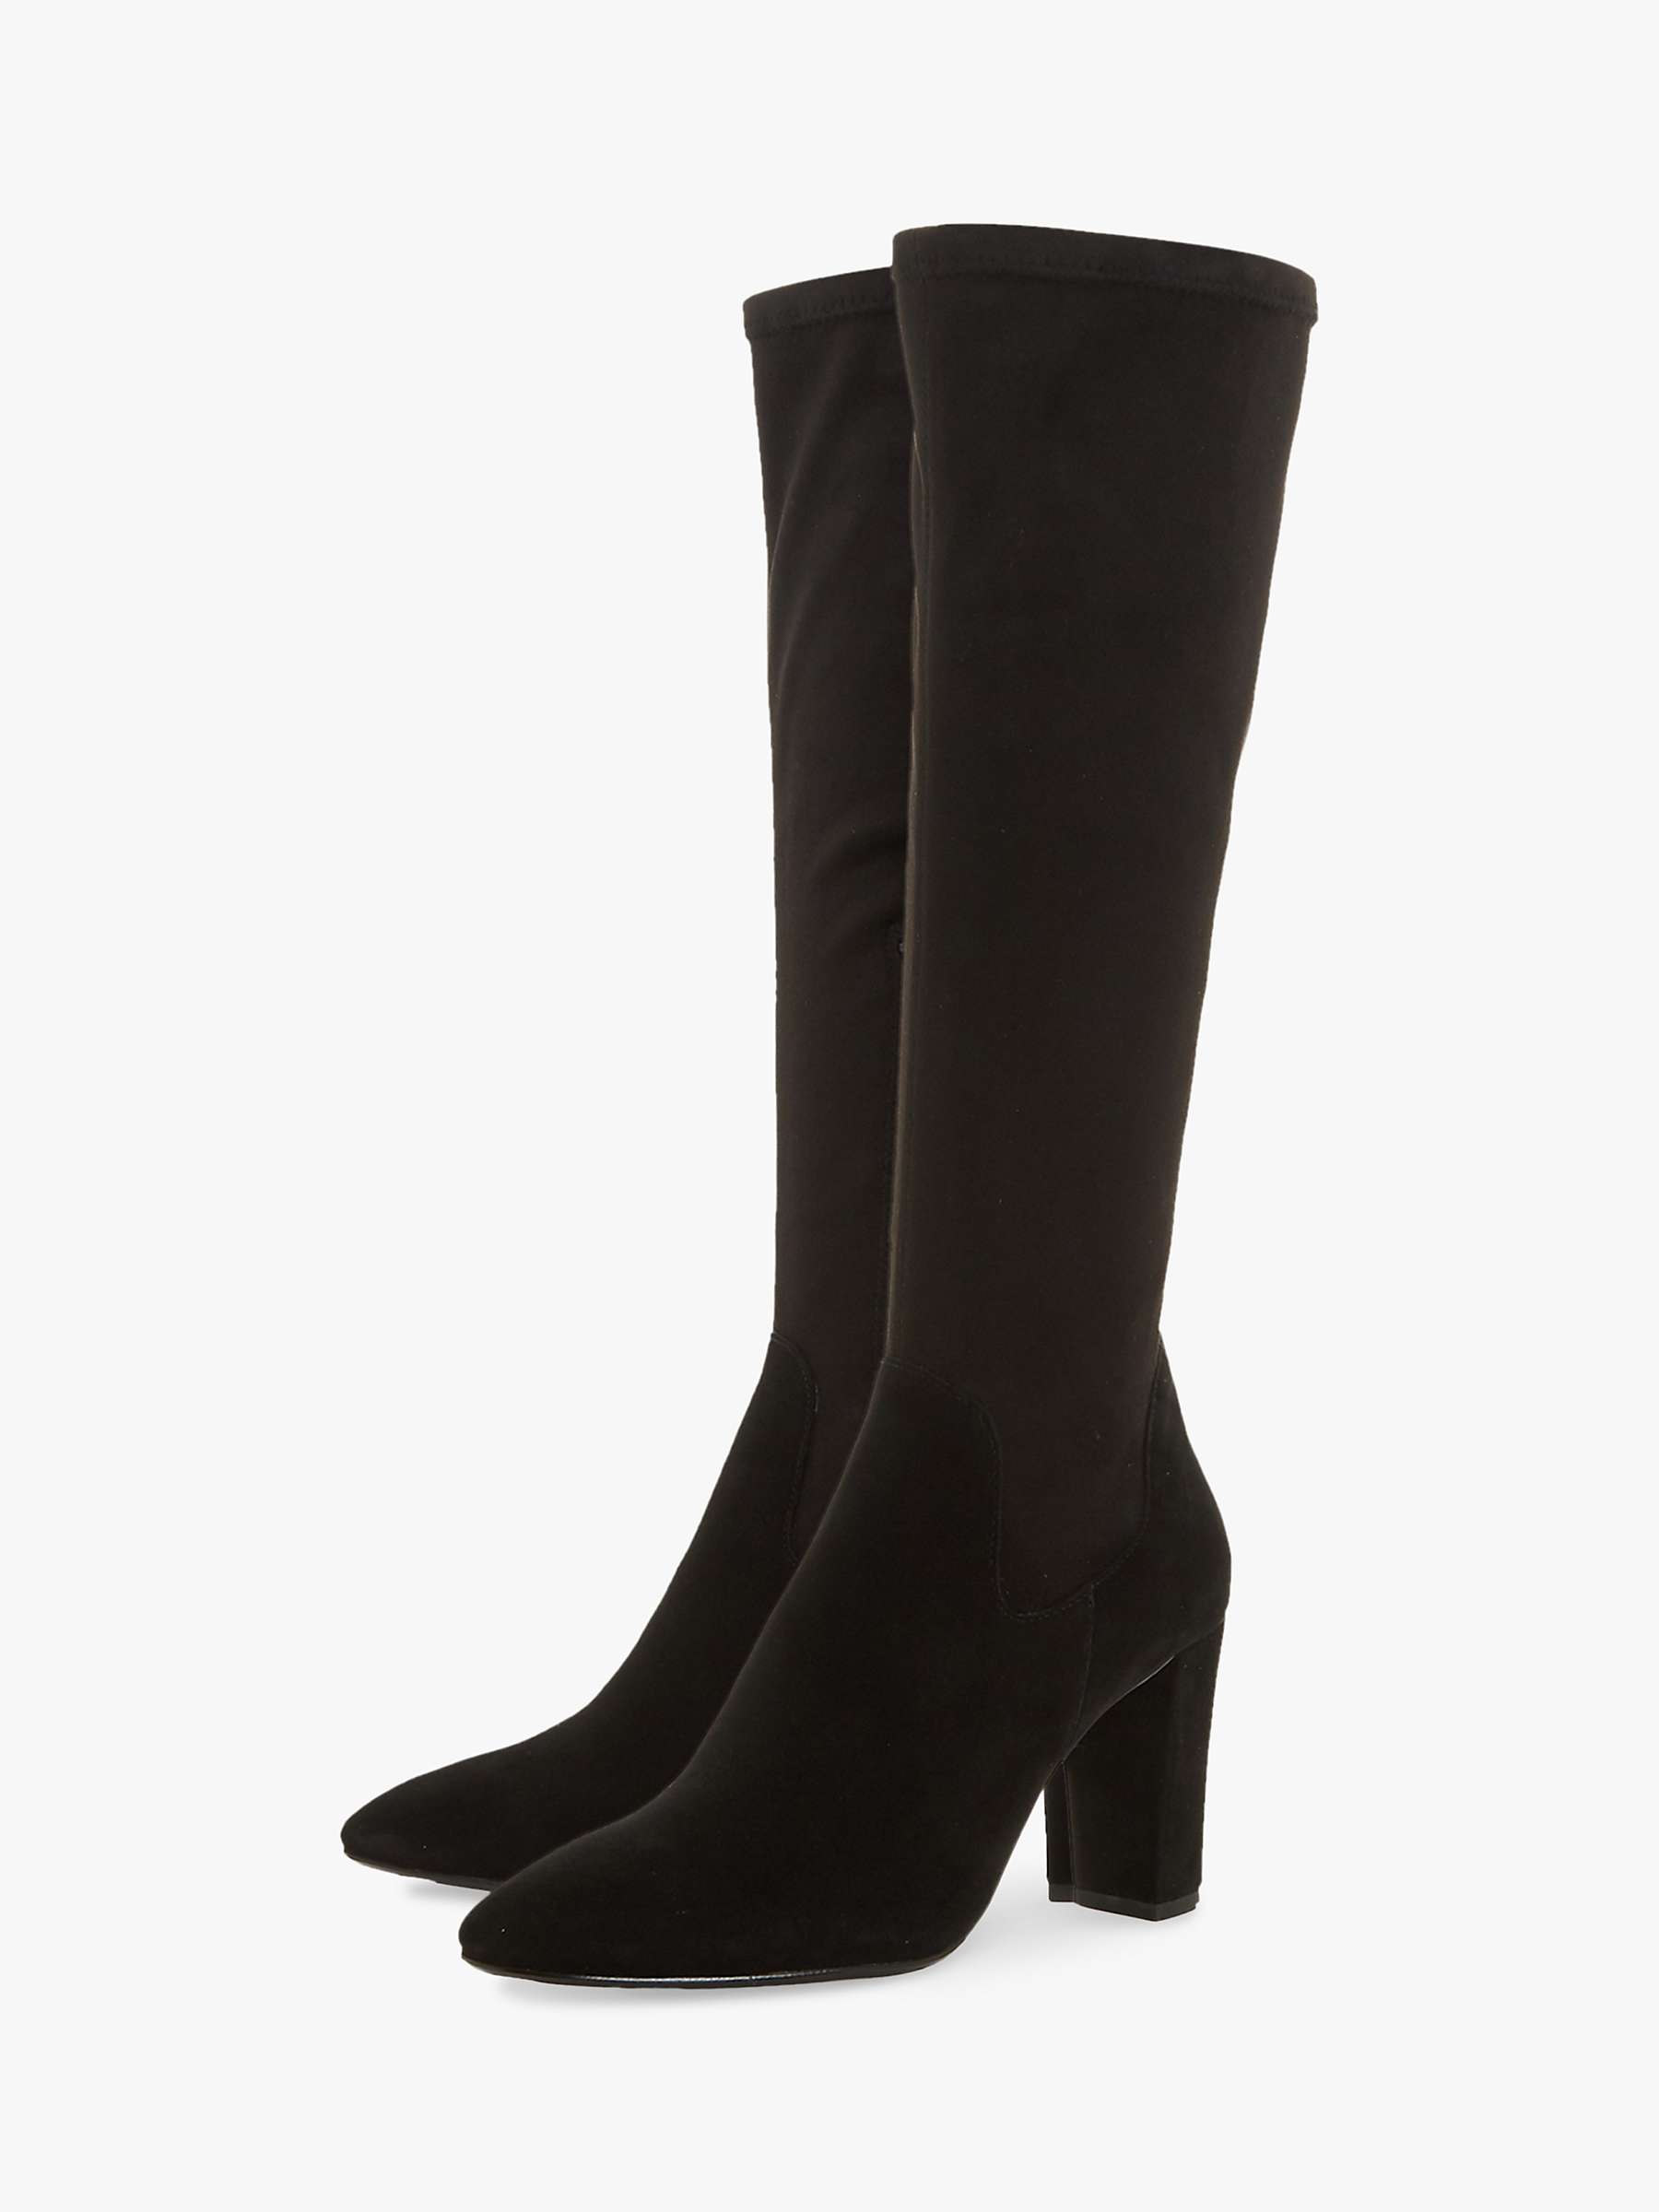 Buy Dune Siren Stretch Block Heel Almond Toe Boots, Black Online at johnlewis.com